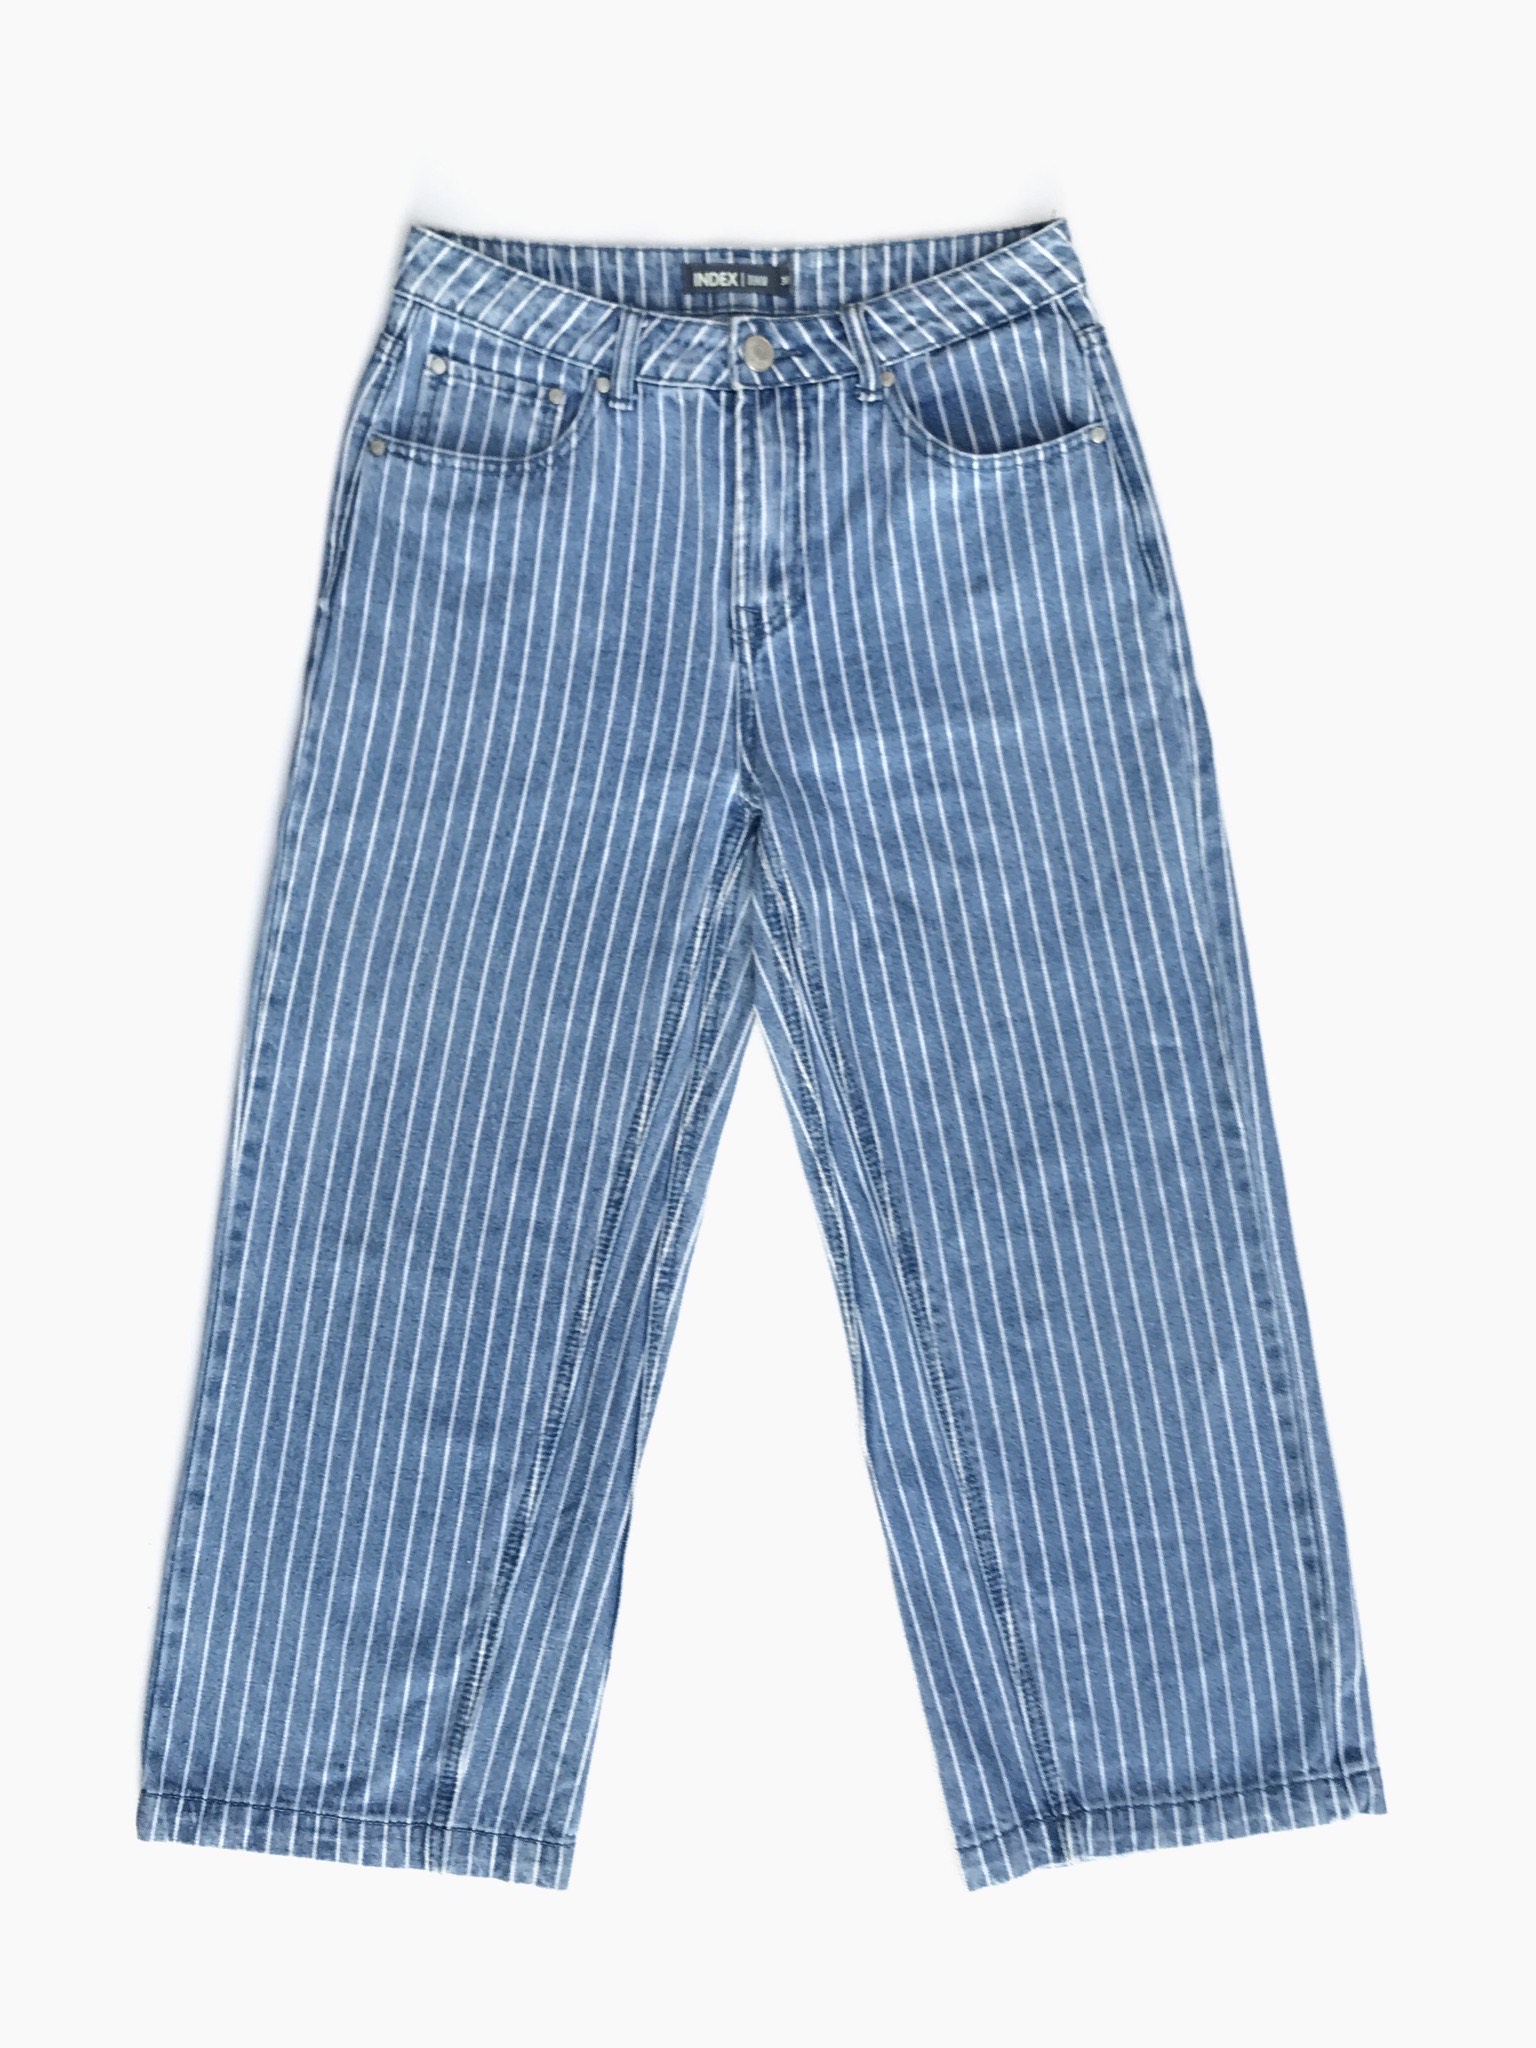 Pantalón jean Index celeste con líneas blancas, denim grueso, a la cintura, 5 bolsillos y corte recto. Precio original S/ 130
Talla 30